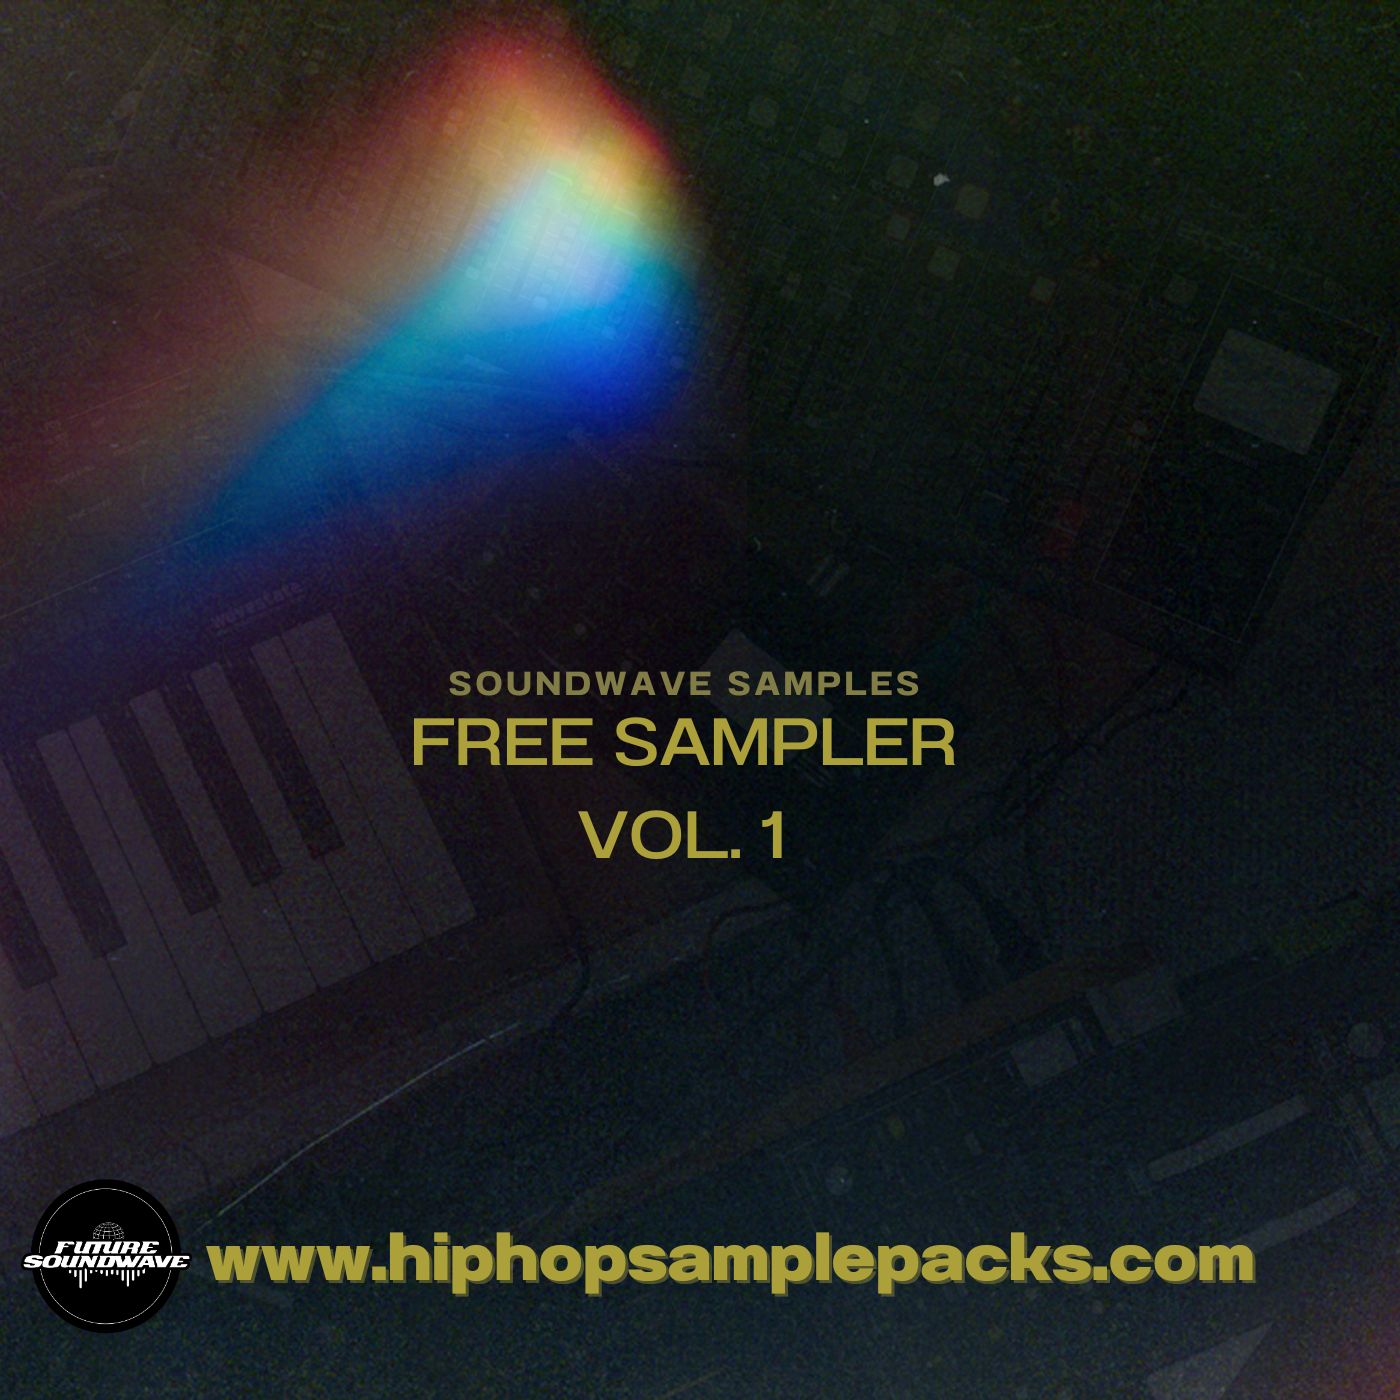 Soundwave Sampler Vol. 1